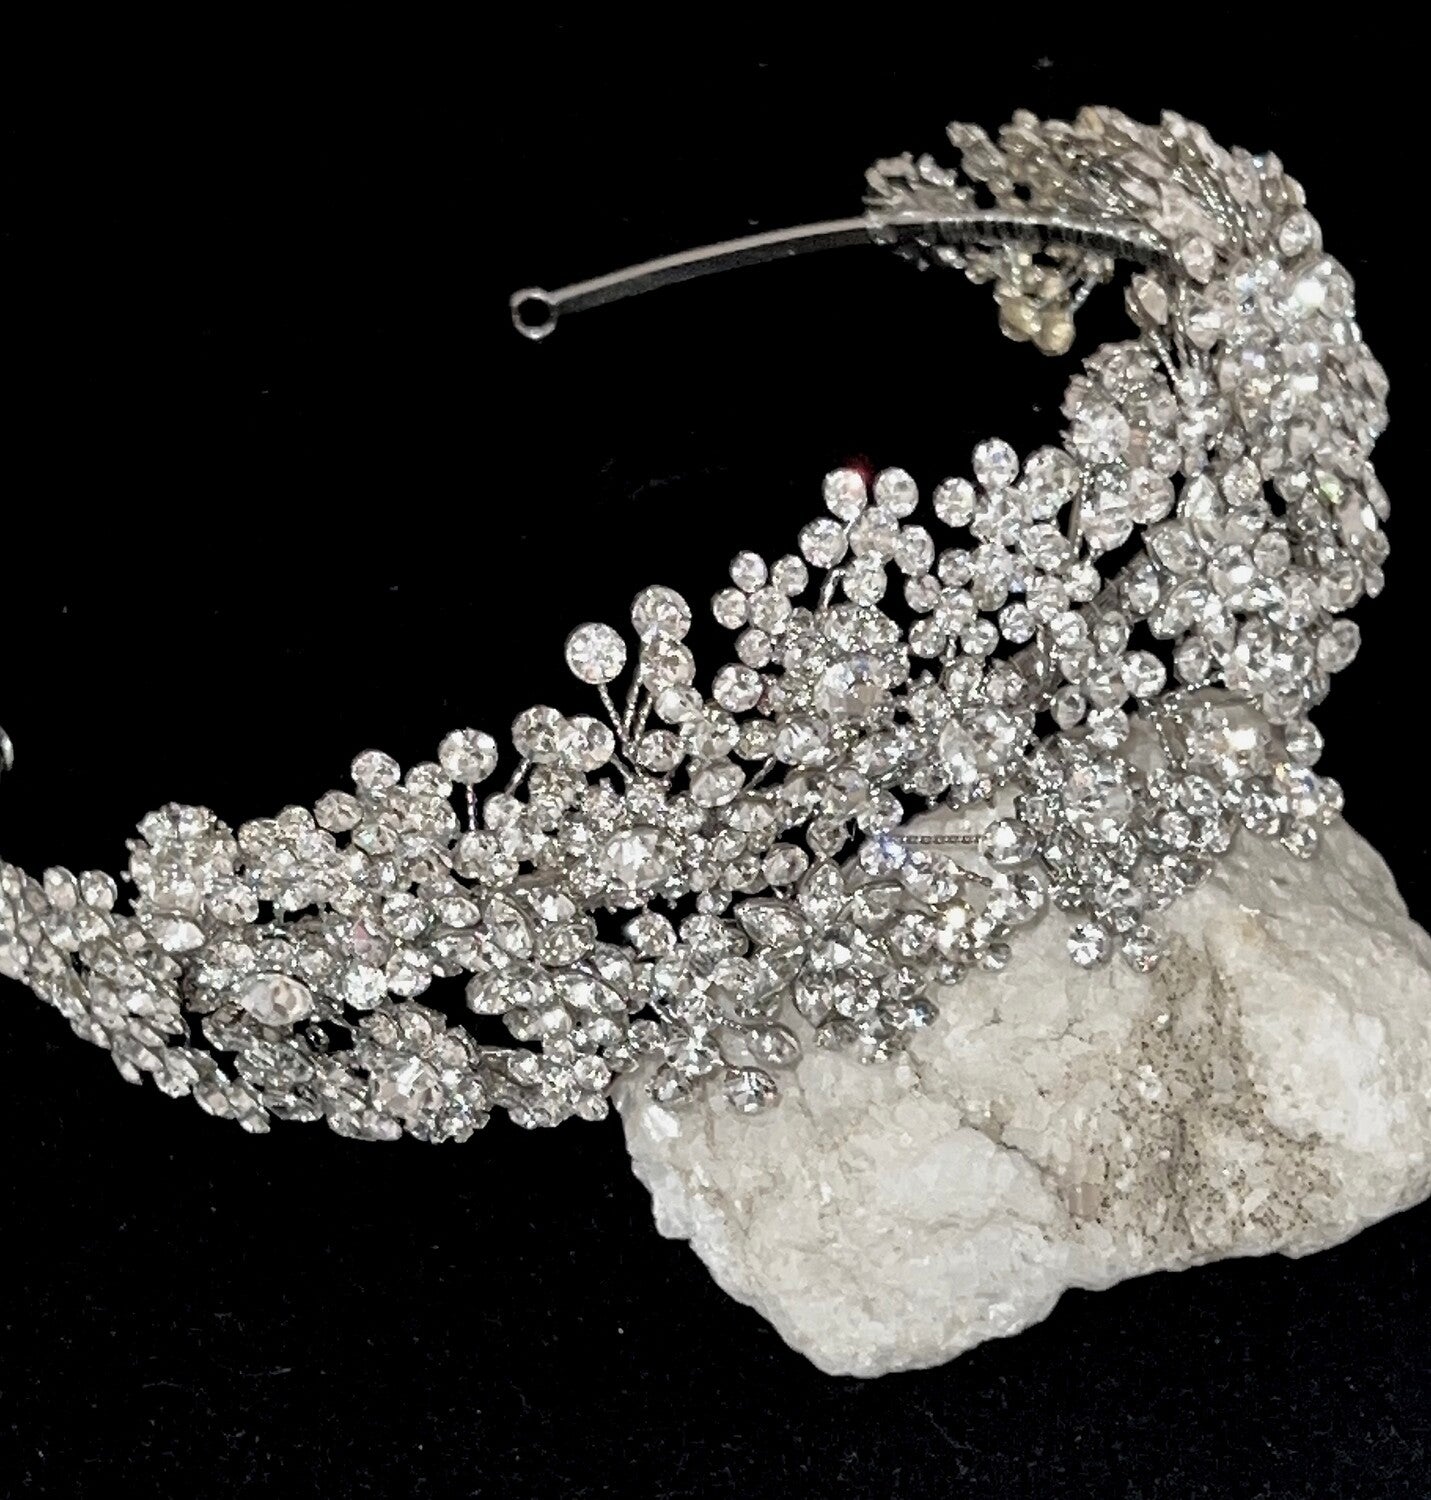 Amandalisa, Stunning Crystal wedding headpiece